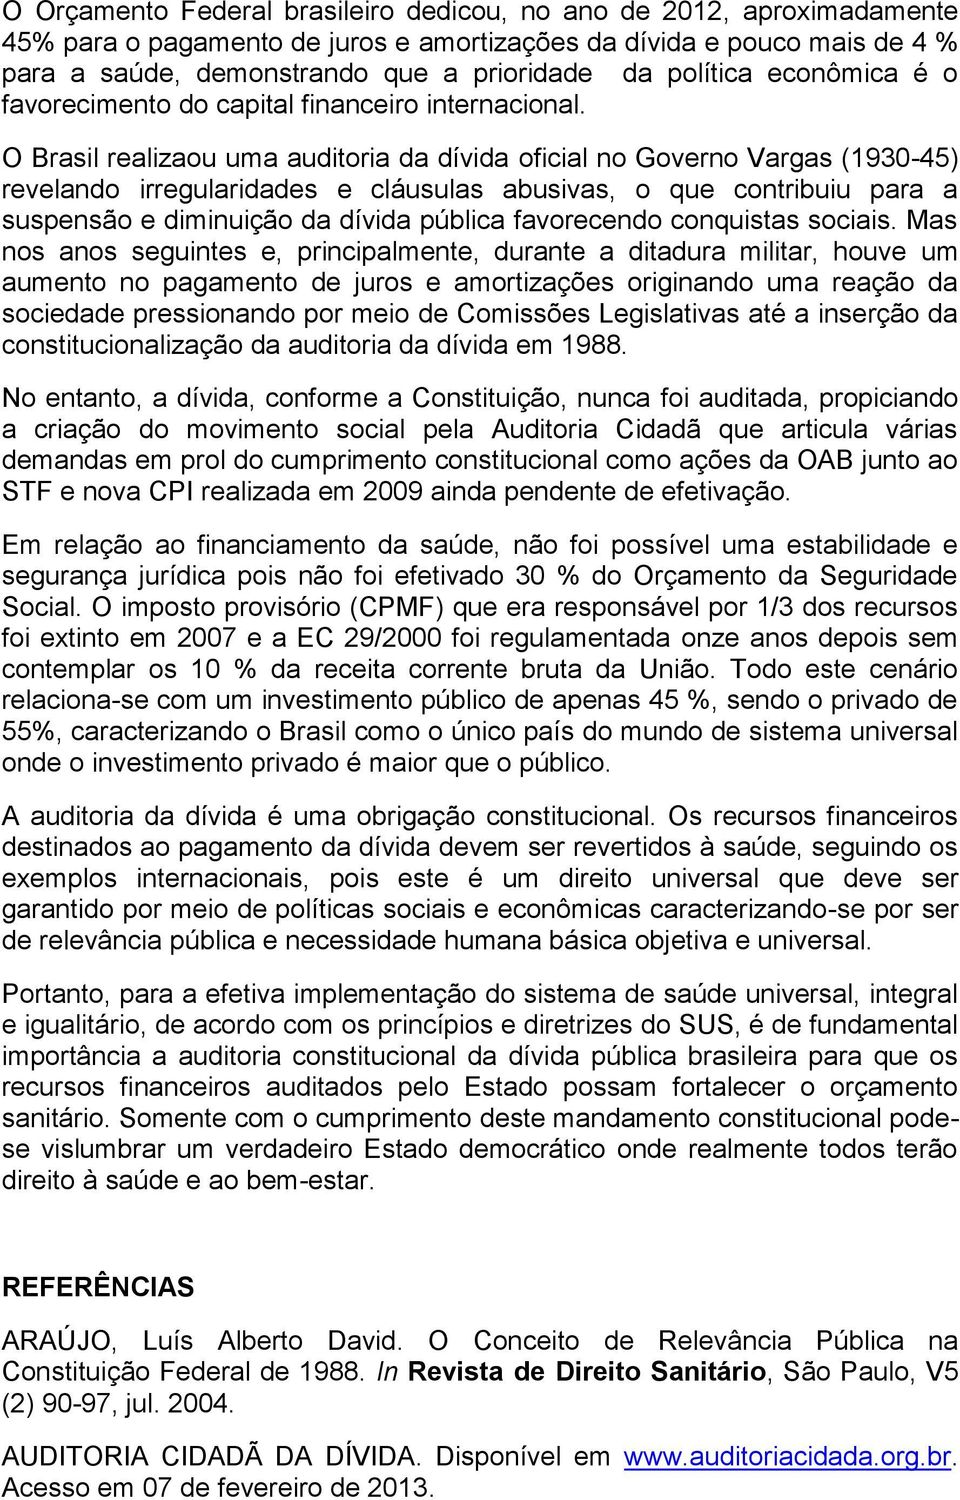 O Brasil realizaou uma auditoria da dívida oficial no Governo Vargas (1930-45) revelando irregularidades e cláusulas abusivas, o que contribuiu para a suspensão e diminuição da dívida pública